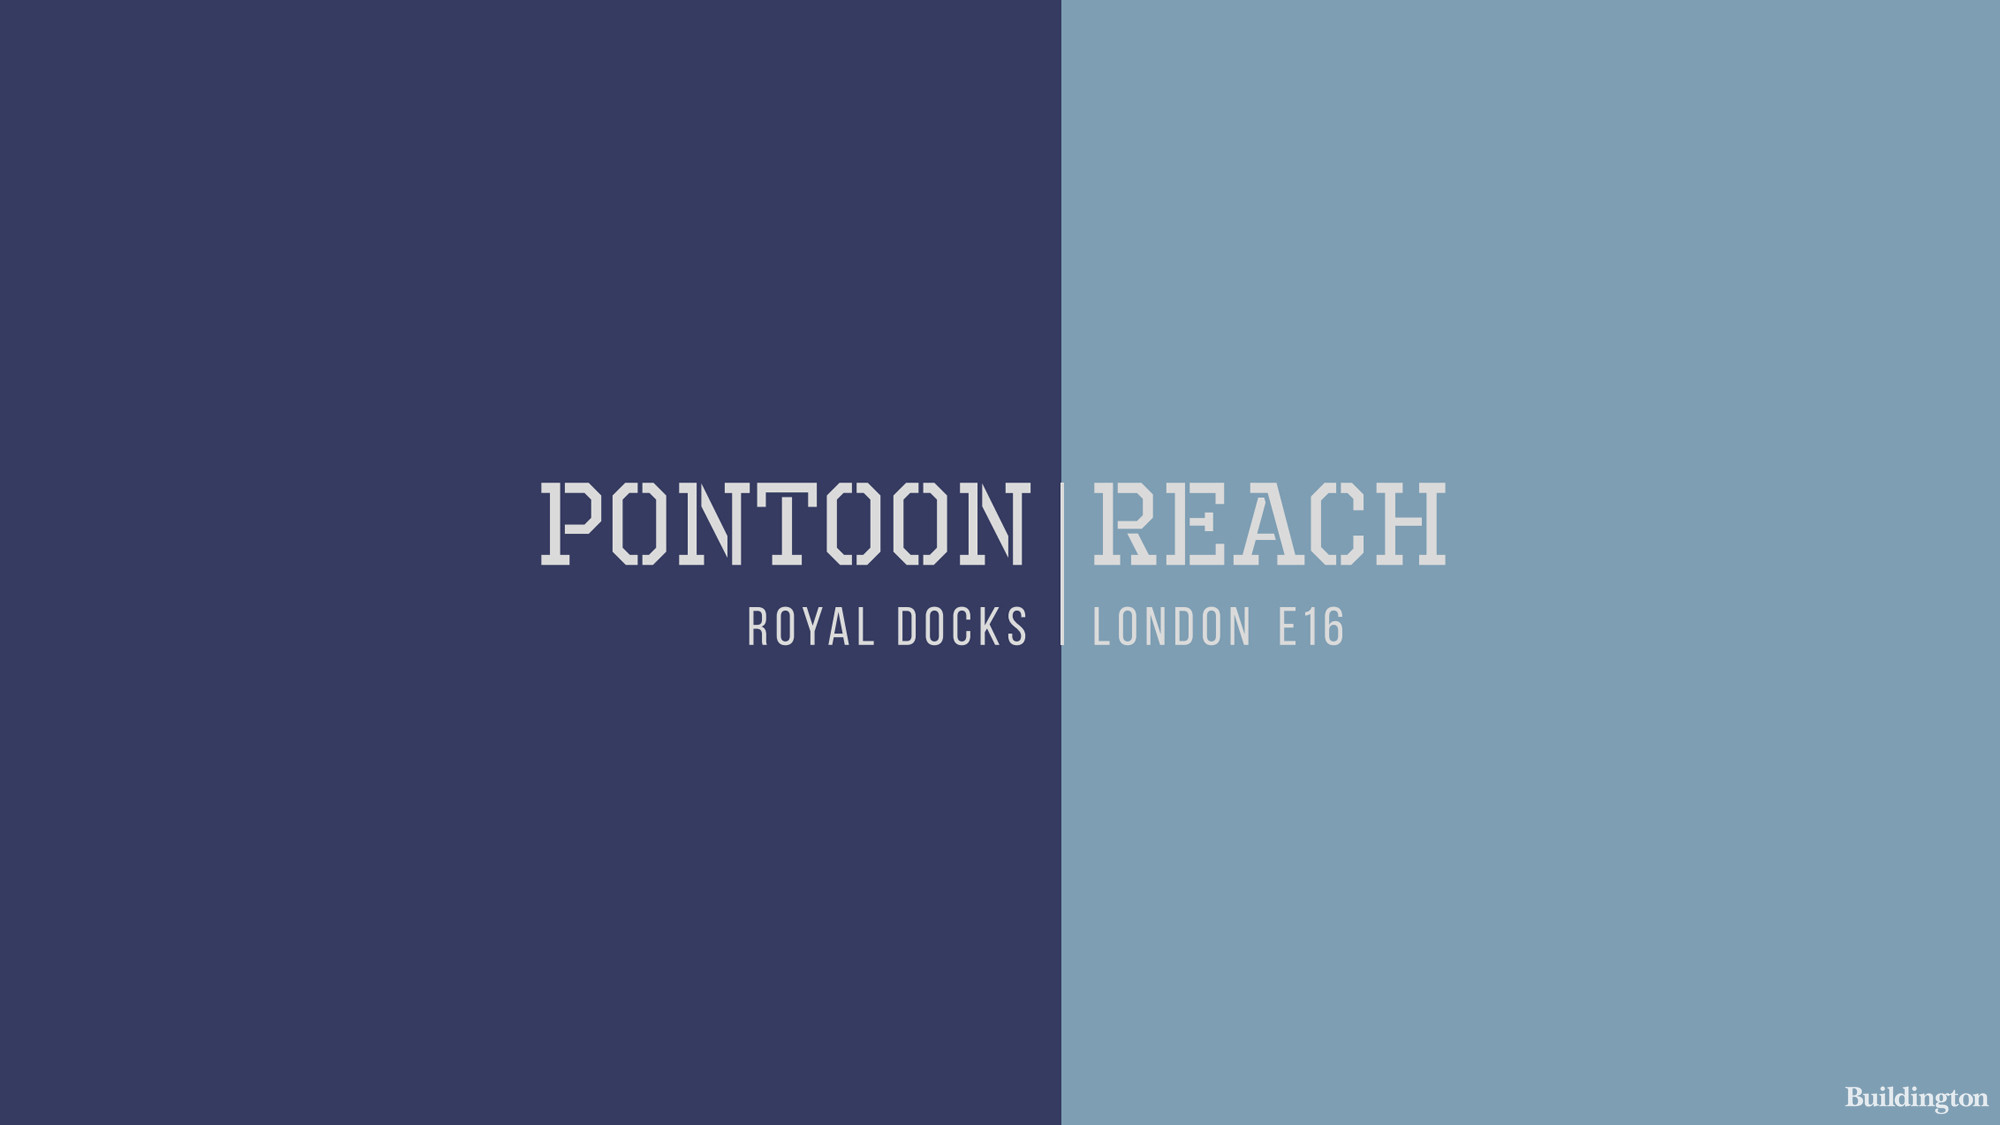 Pontoon Reach development by Redrow